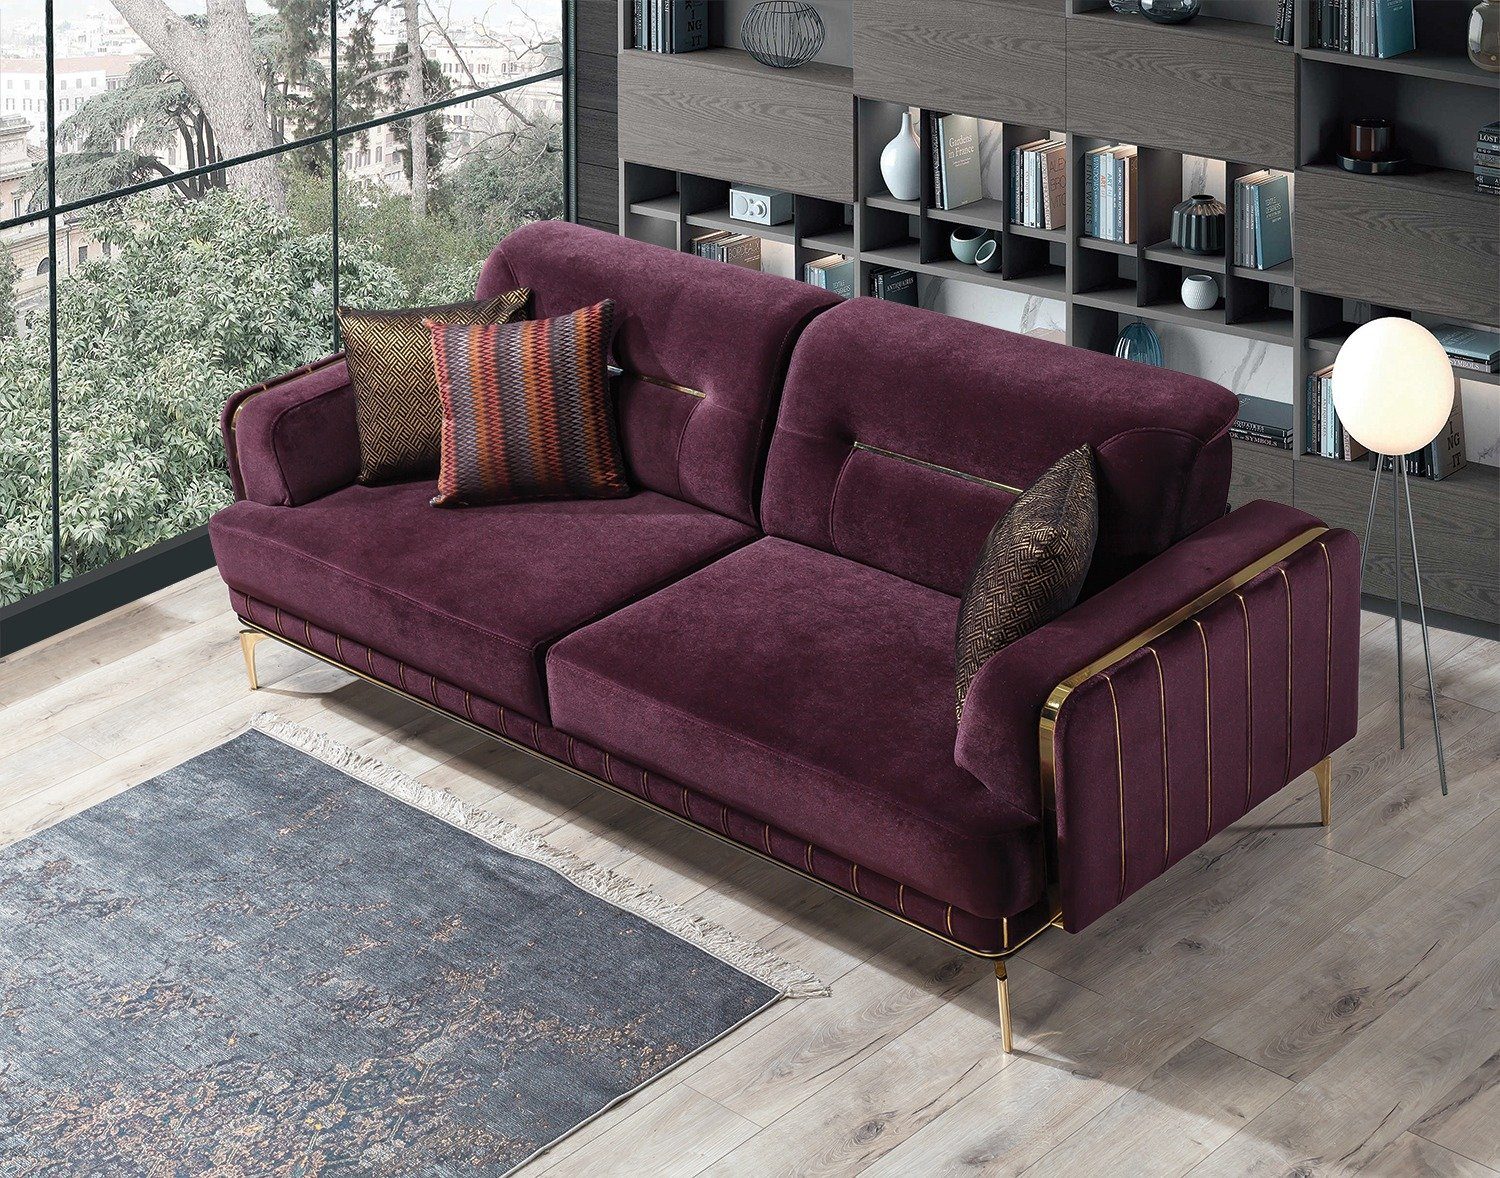 Villa Möbel Sofa Note, 1 Stk. 2-Sitzer, Quality Made in Turkey Violett | Alle Sofas